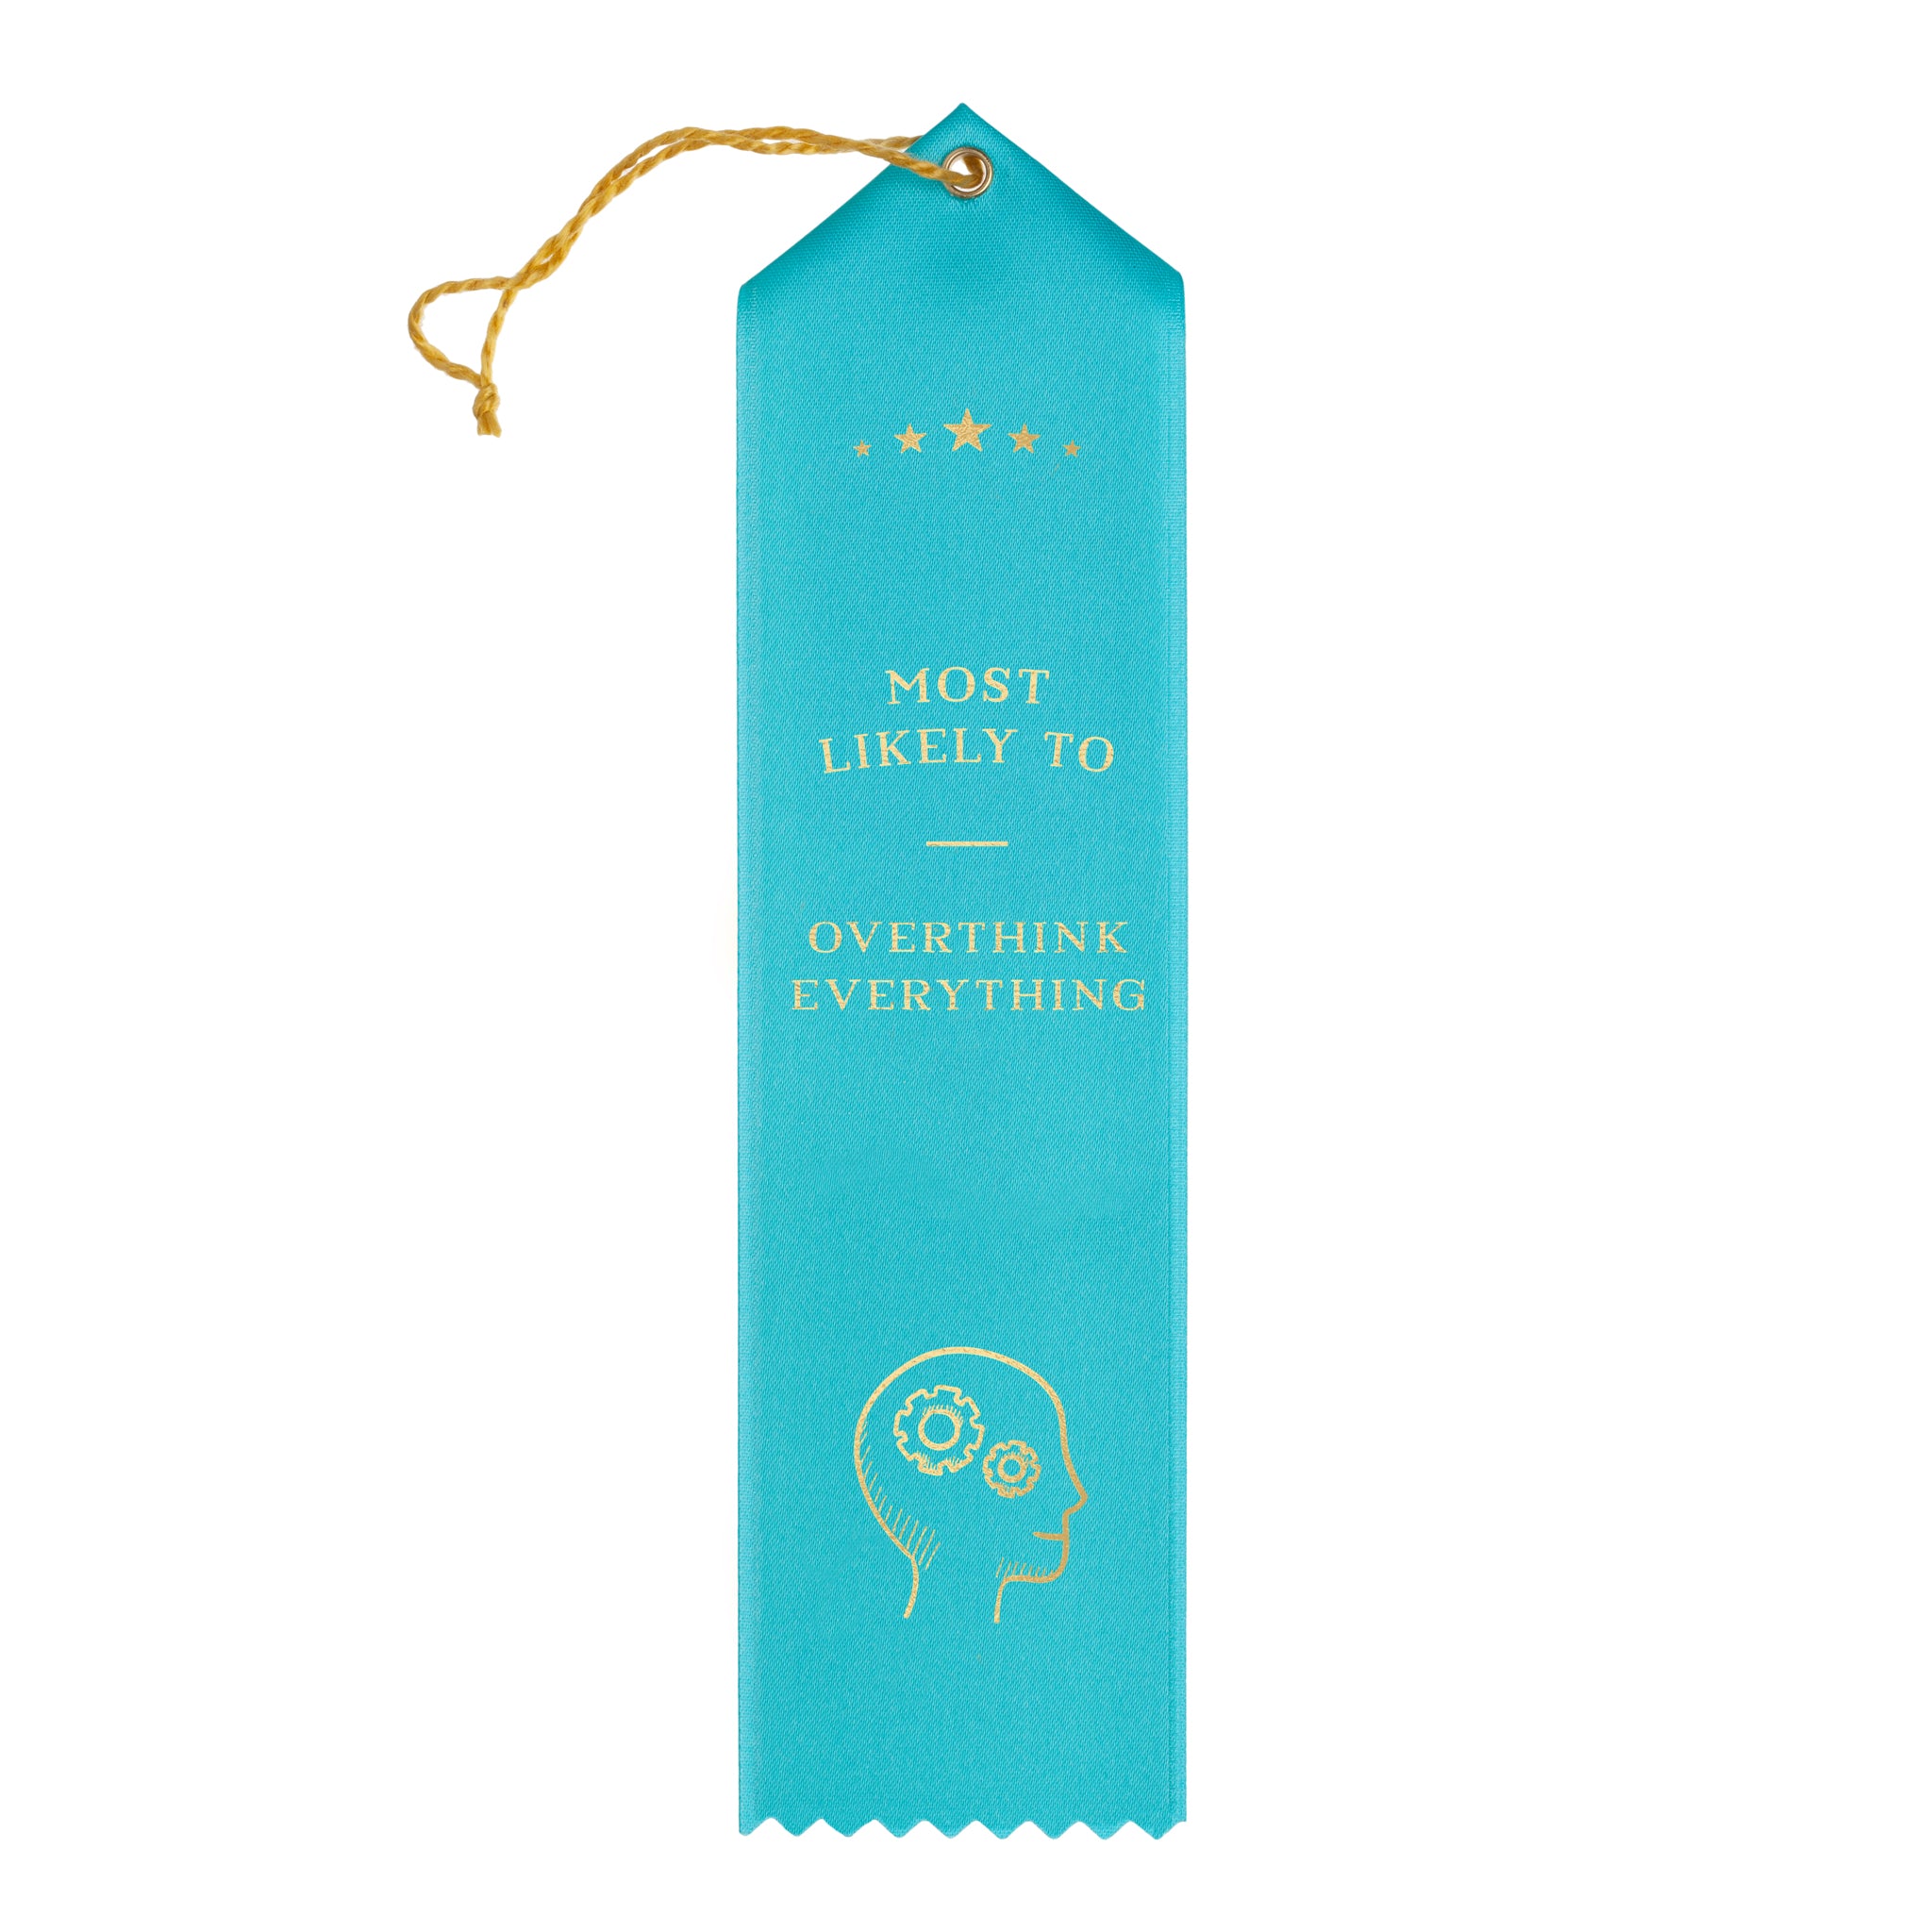 Overthink Everything Award Ribbon